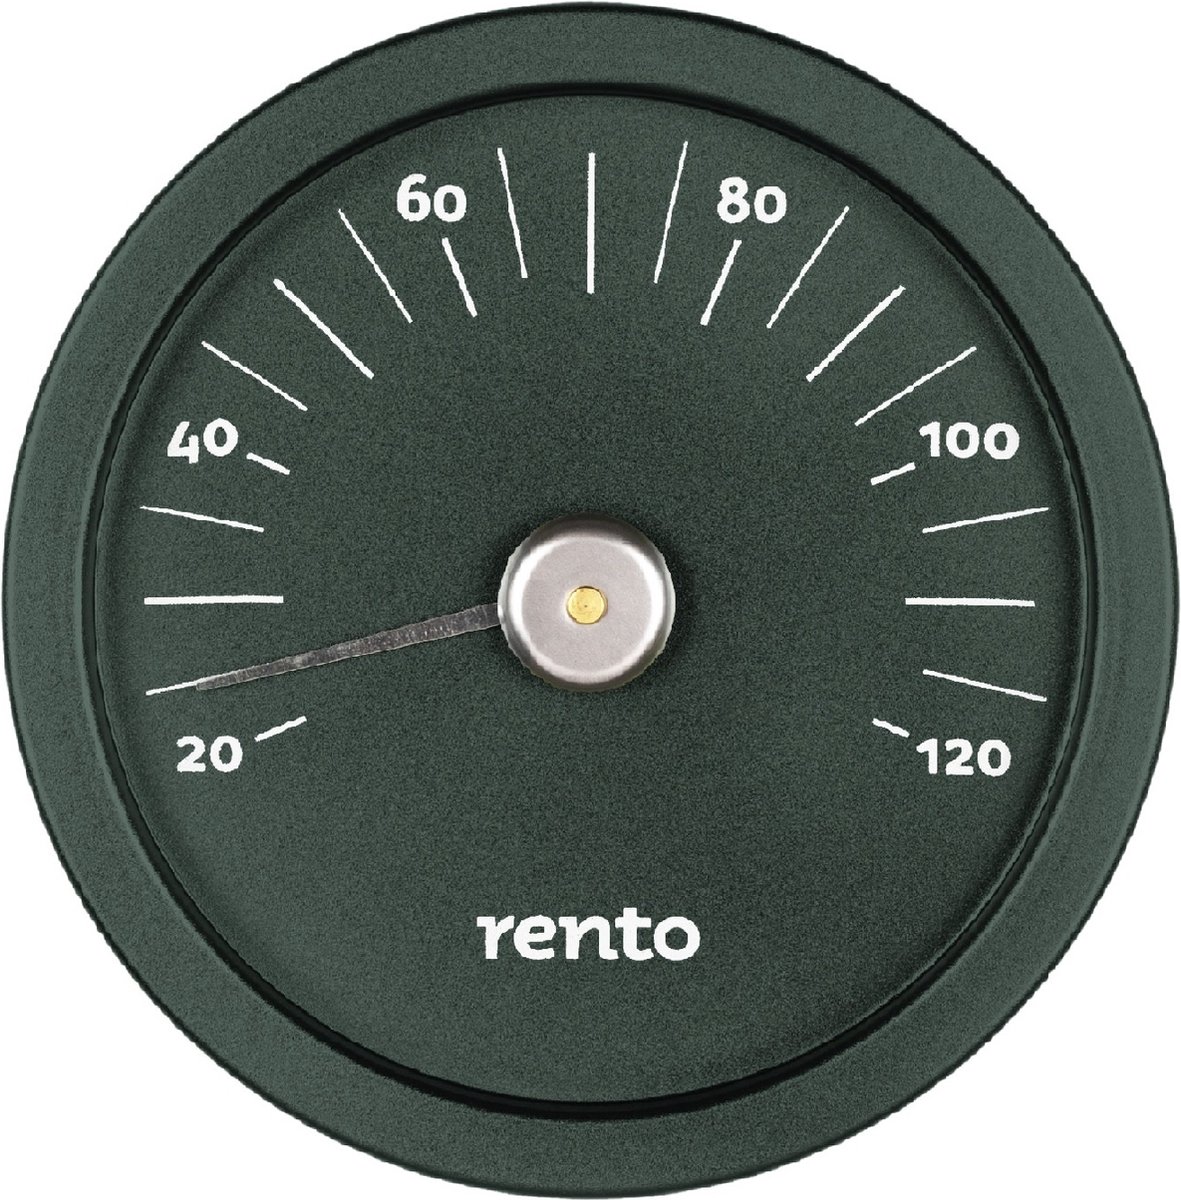 Rento thermometer 15 cm donkergroen OP = OP - Rento